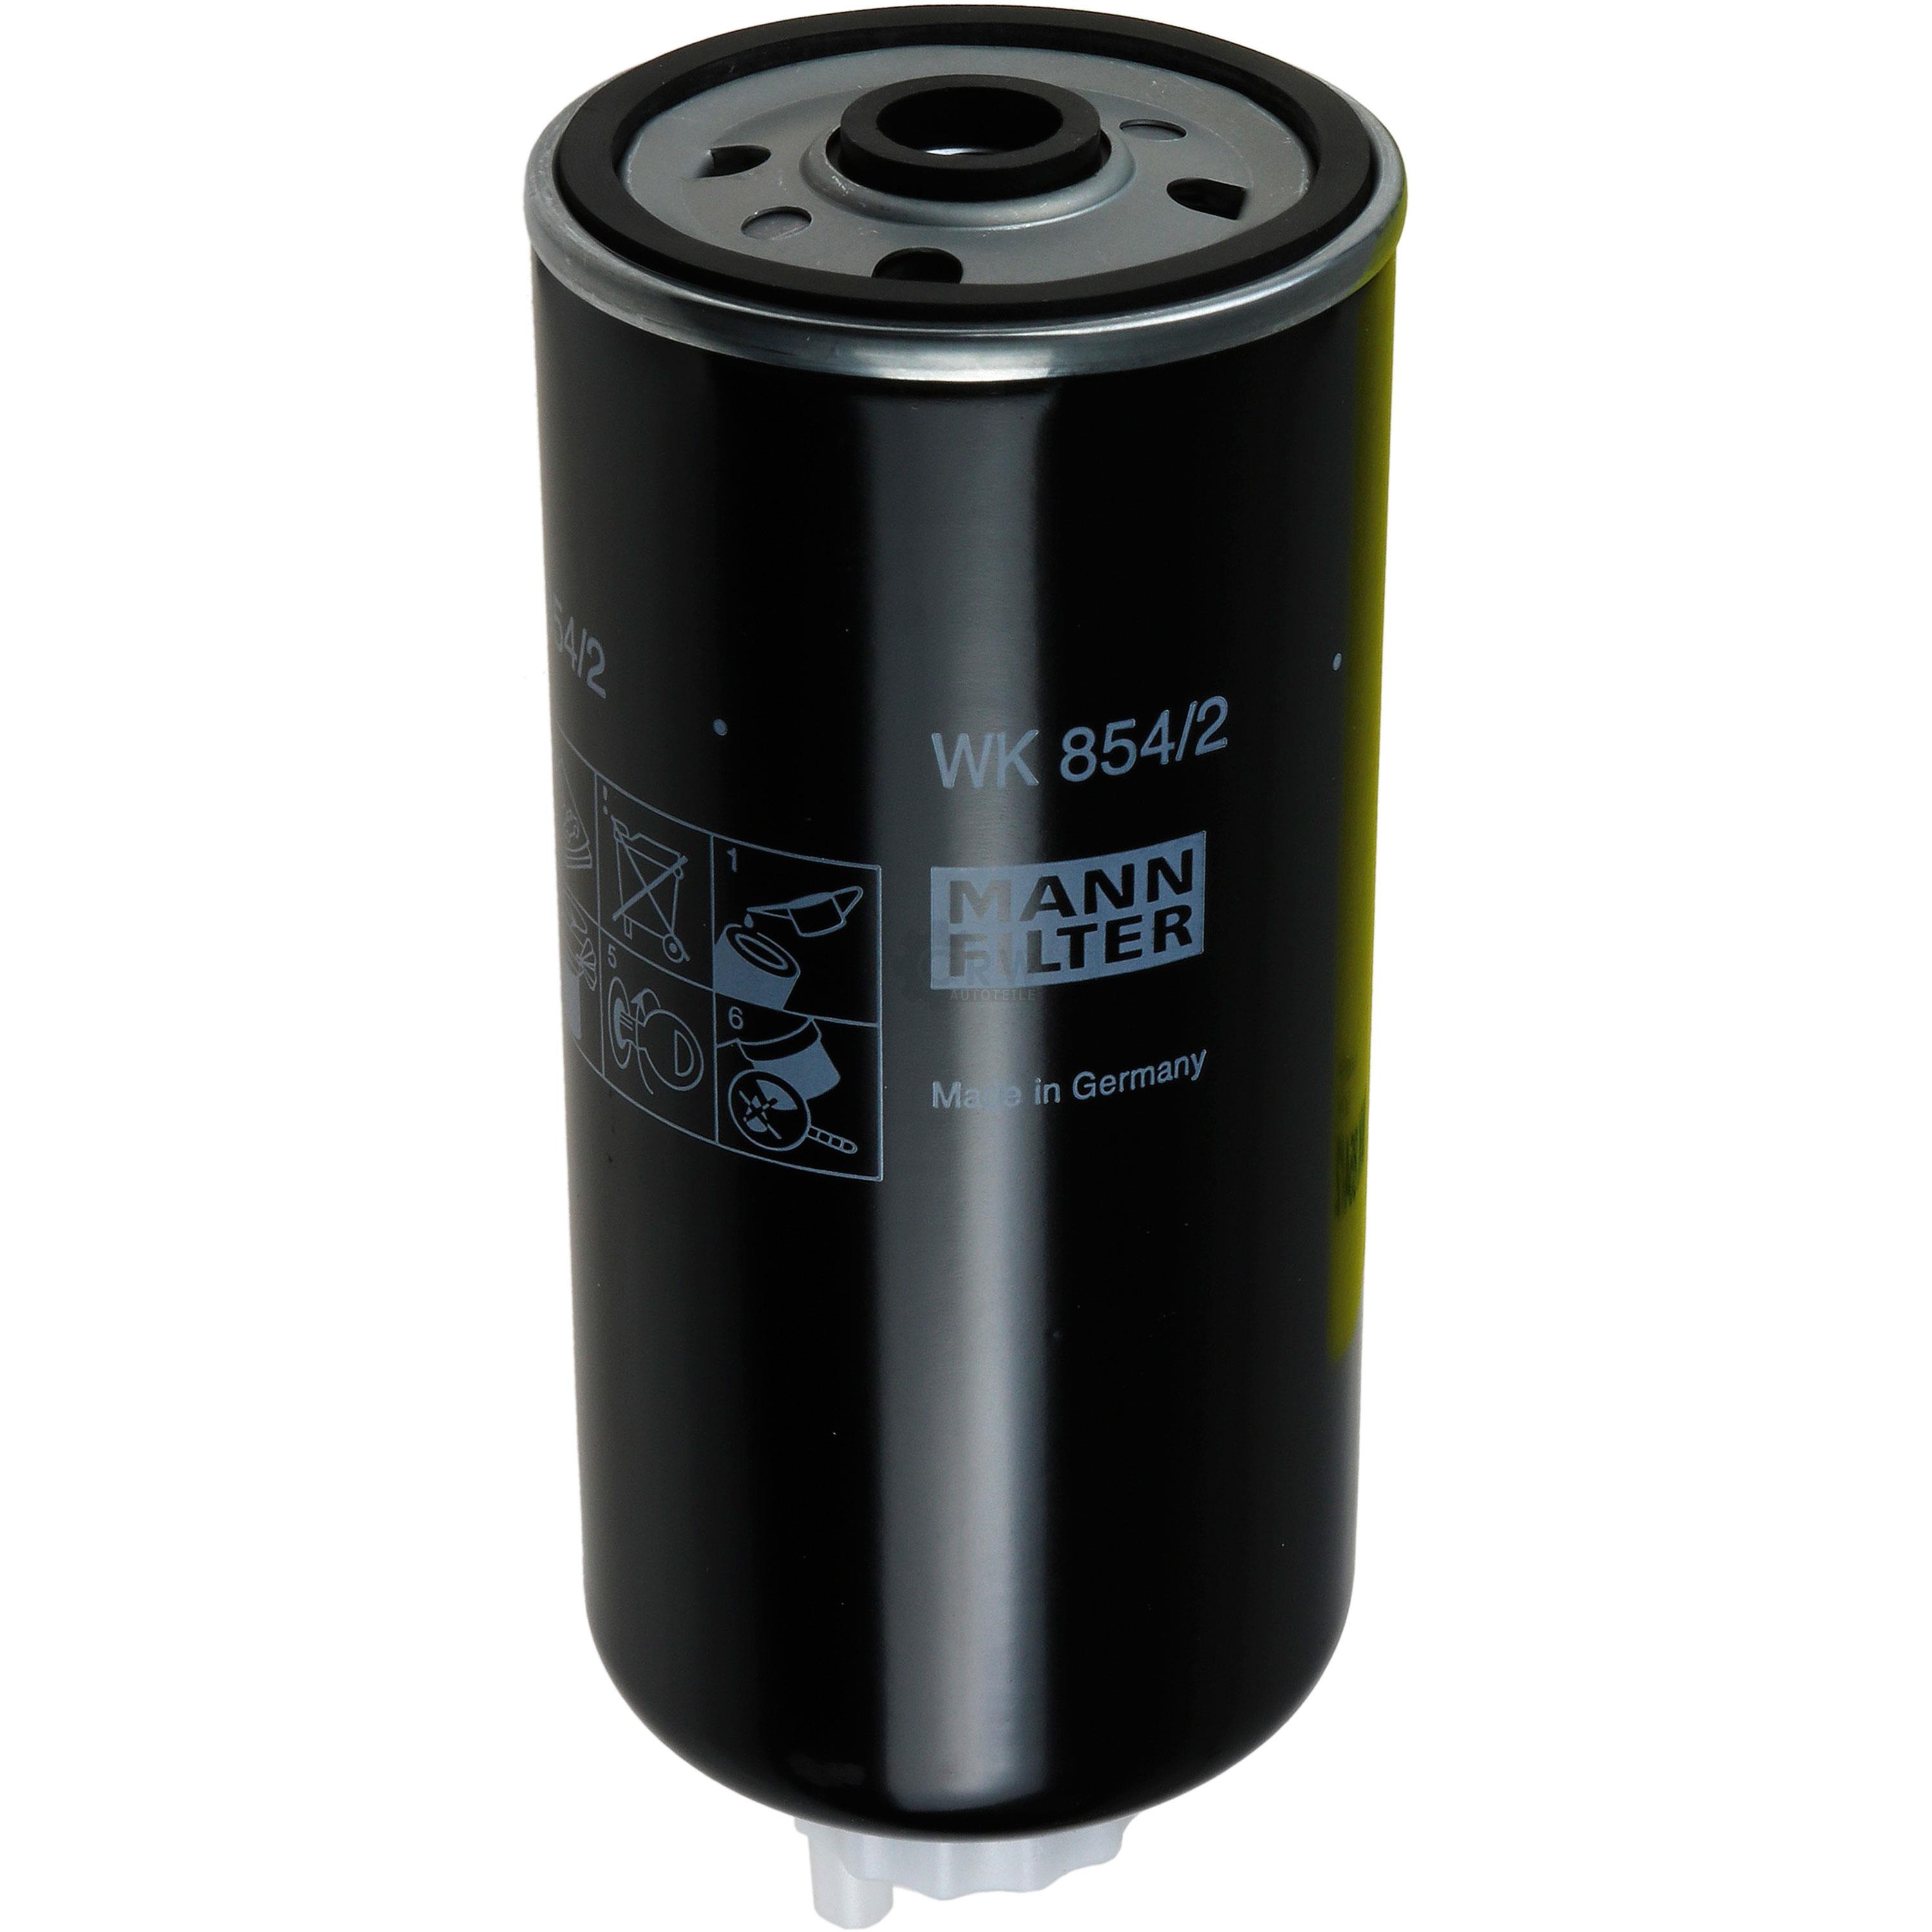 MANN-FILTER Kraftstofffilter WK 854/2 Fuel Filter